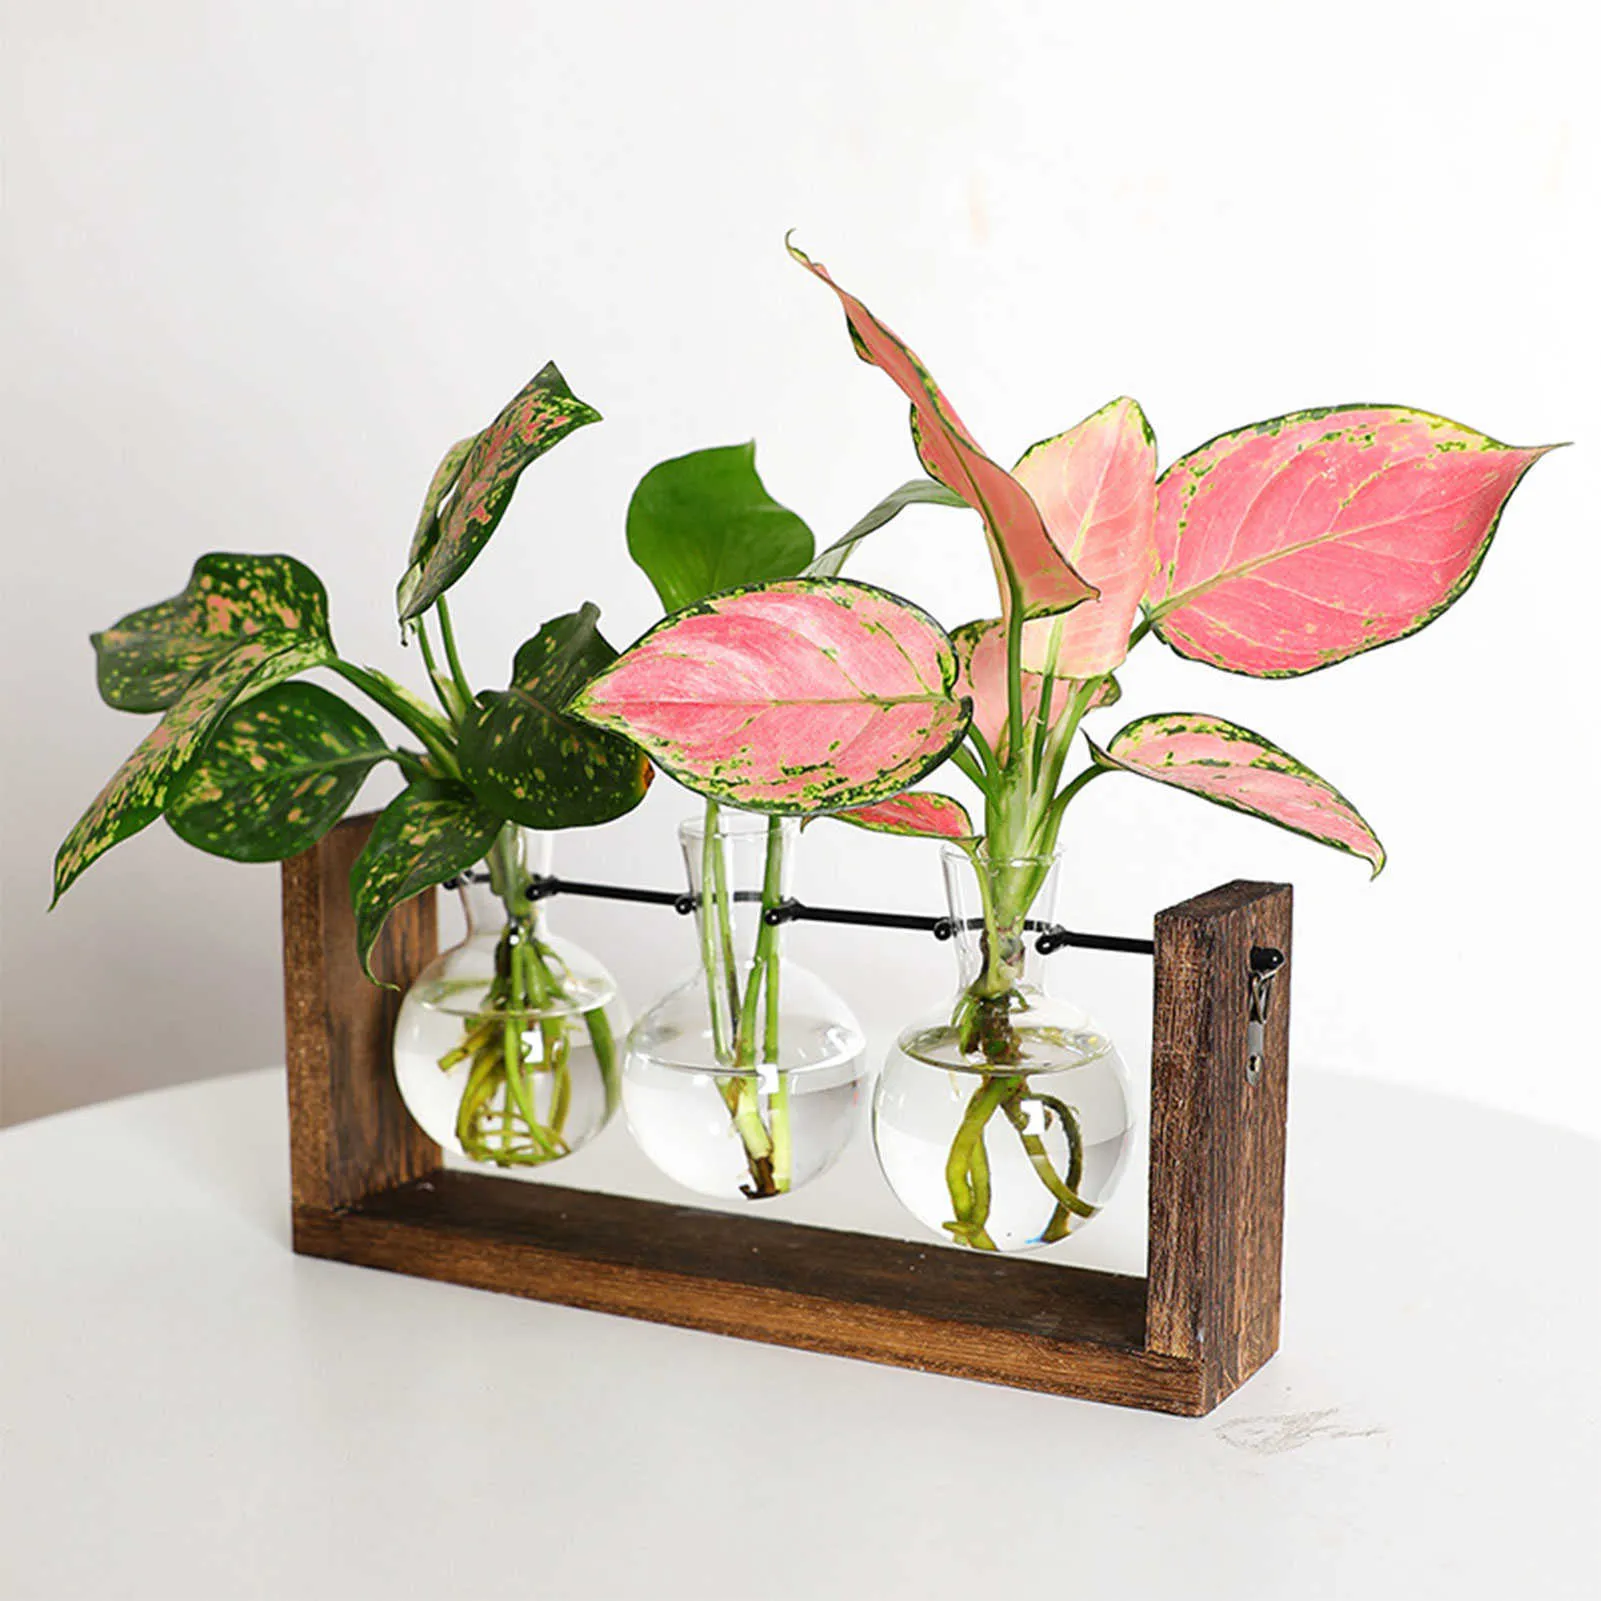 Горшки для цветов, рамка, стеклянные вазы для гидропоники, вазы для растений, бонсай, прозрачный подвесной цветочный горшок с деревянным подносом, домашний декор стены